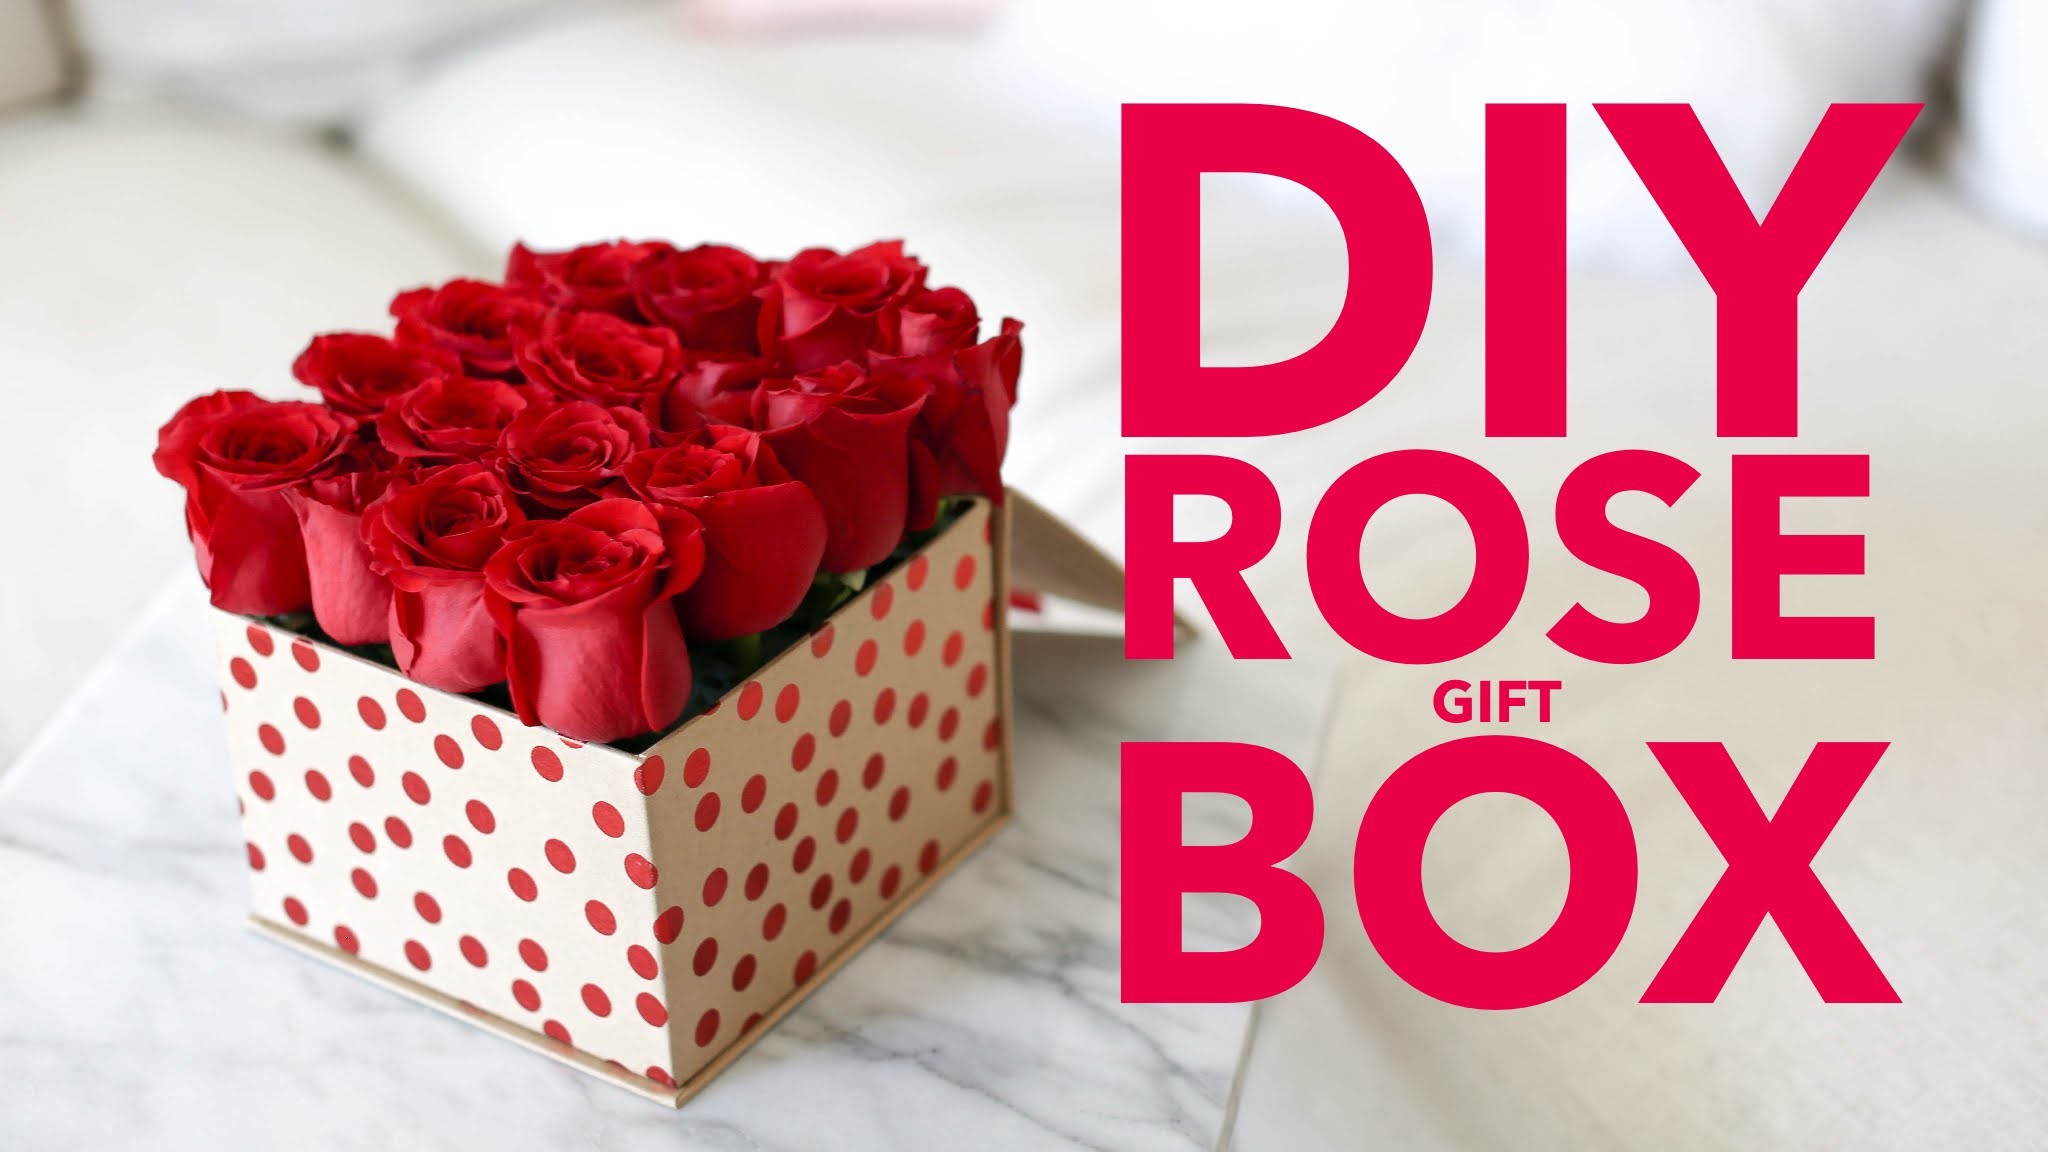 DIY ROSE GIFT BOX